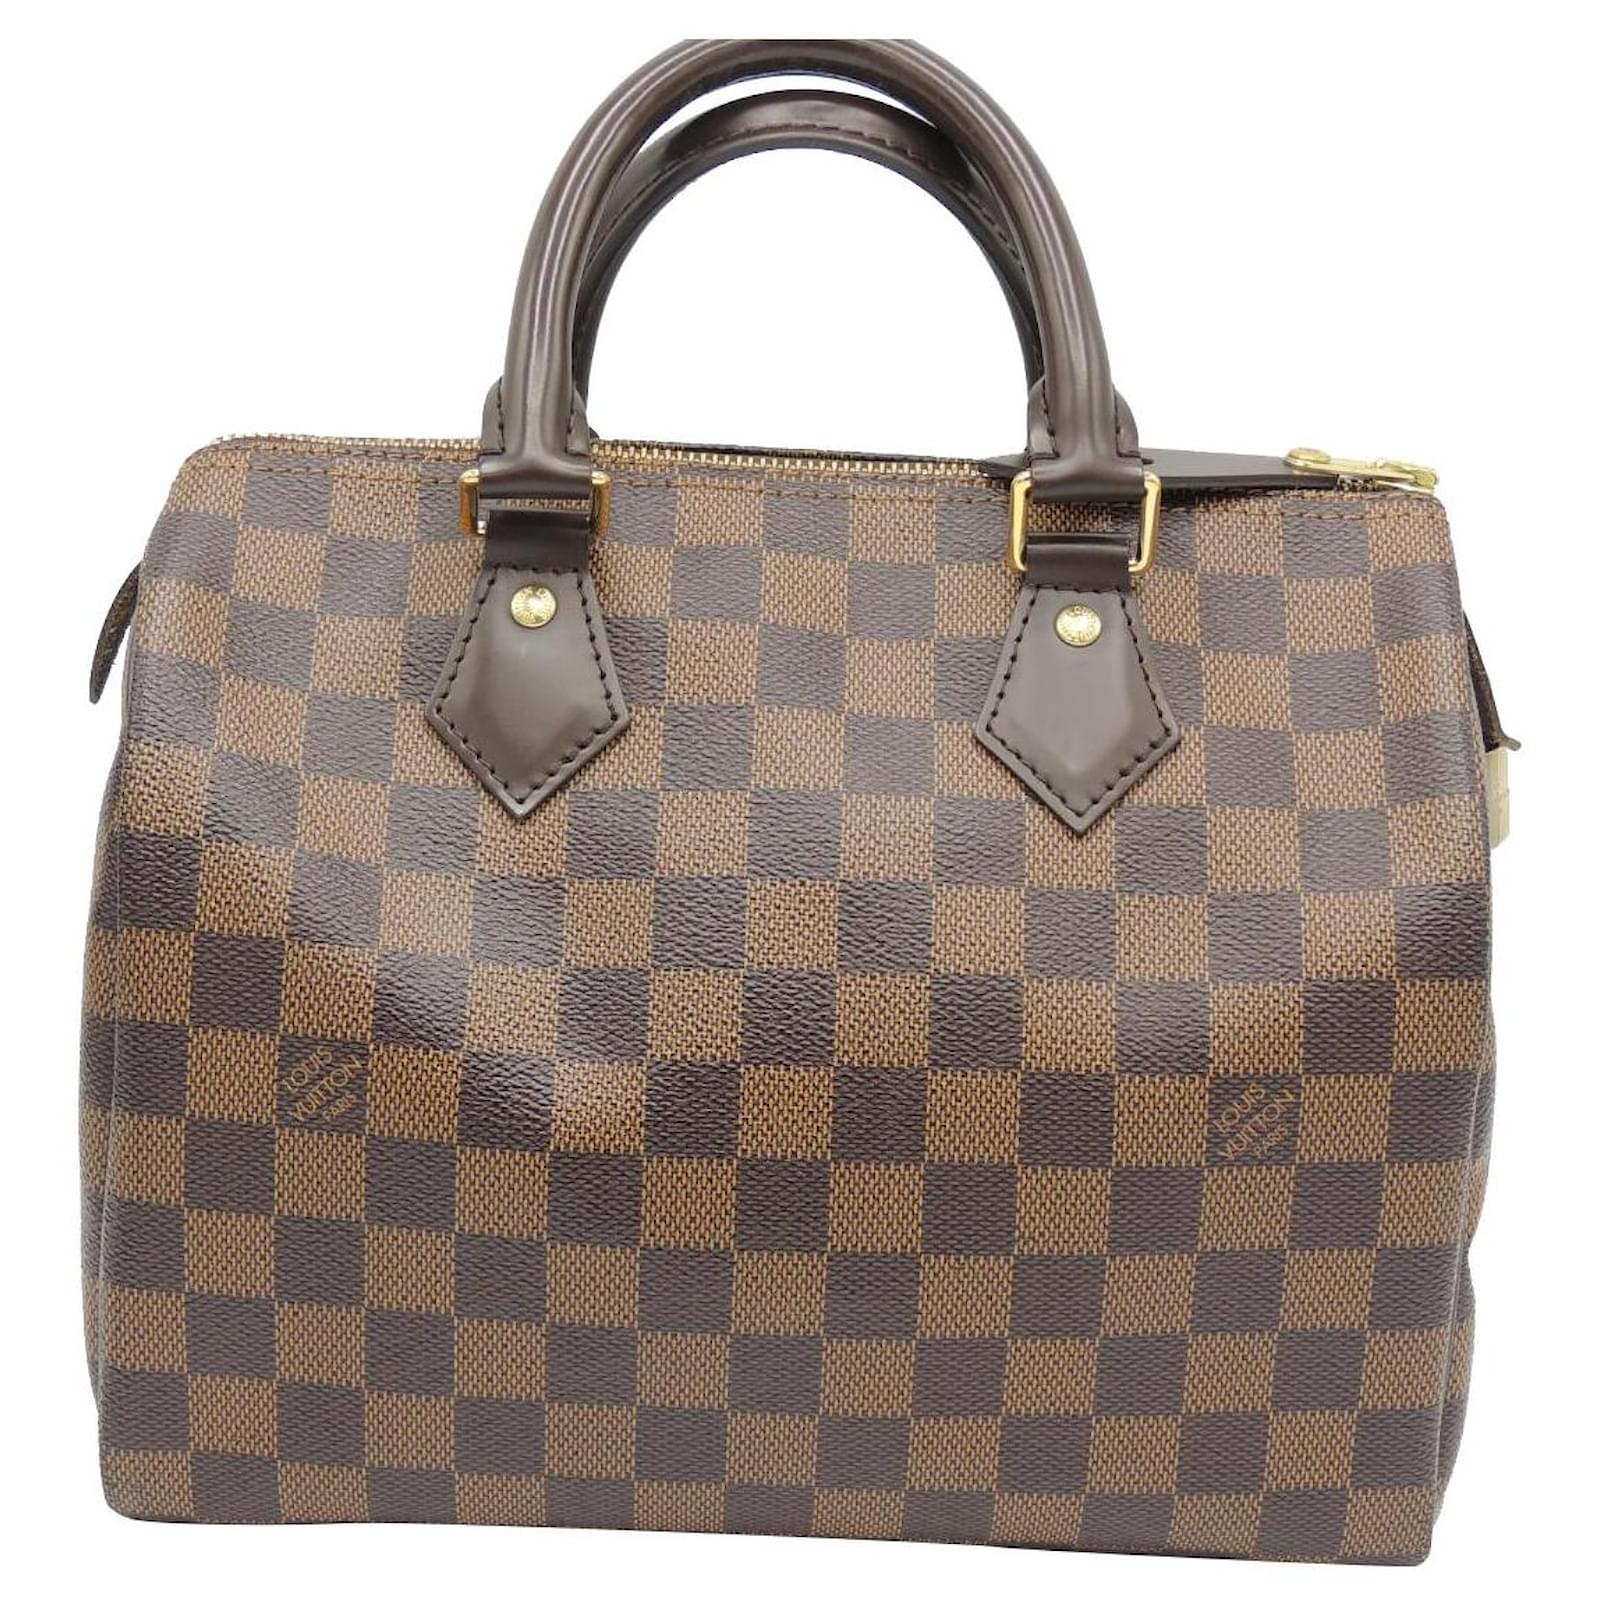 Louis Vuitton, Bags, Ladies Louis Vuitton Purse No Receipt New Condition